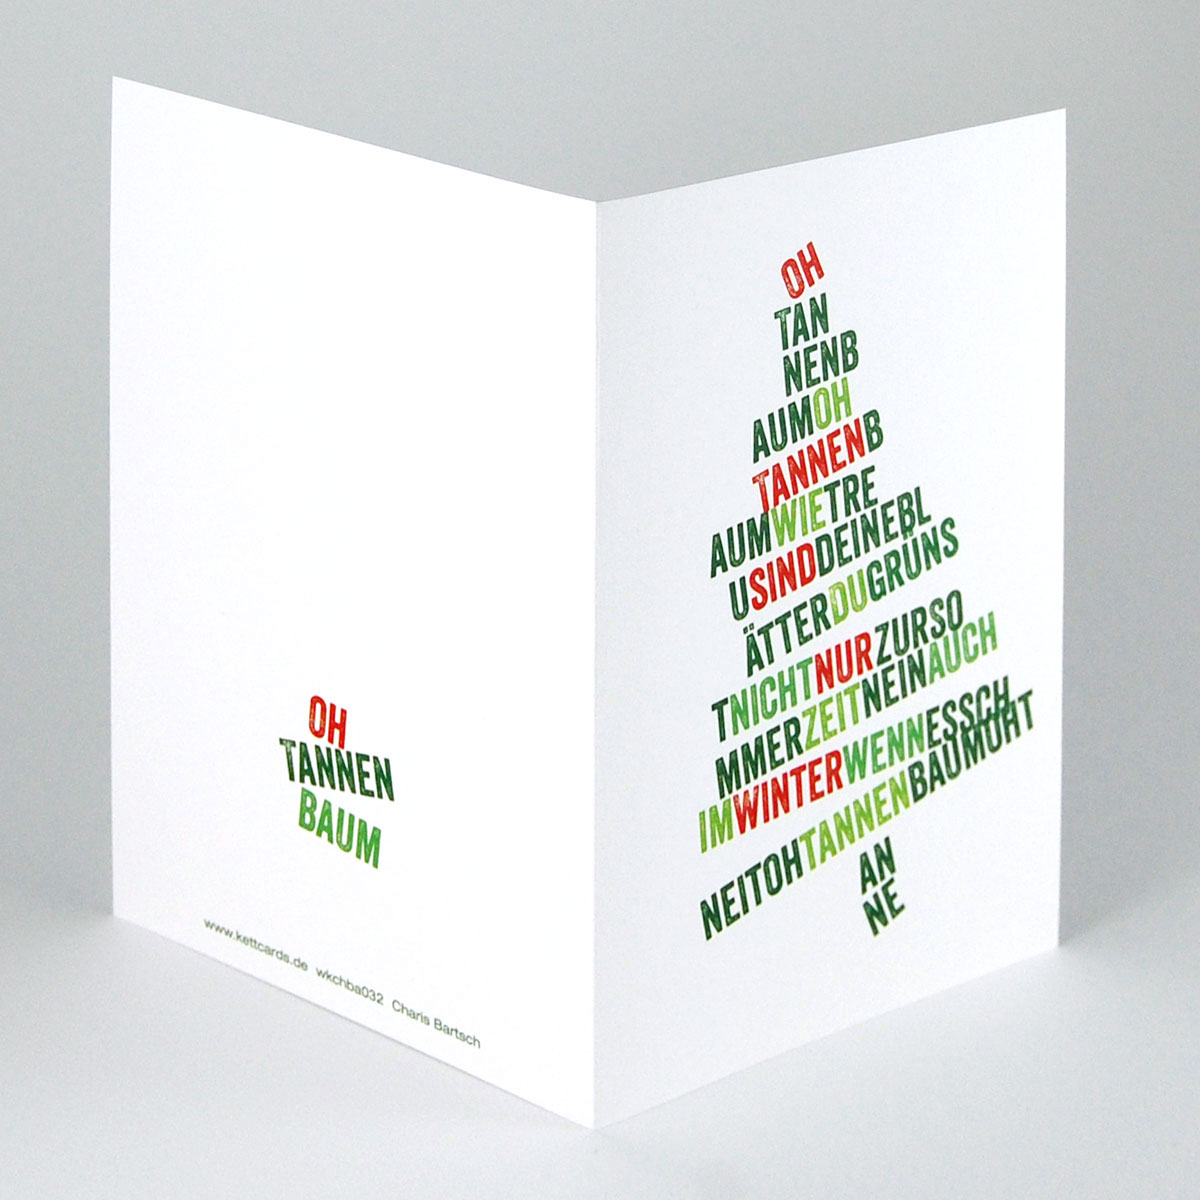 Weihnachtskarten mit Schriftgestaltung, das Lied Oh Tannenbaum zu einem Tannenbaum zusammengesetzt